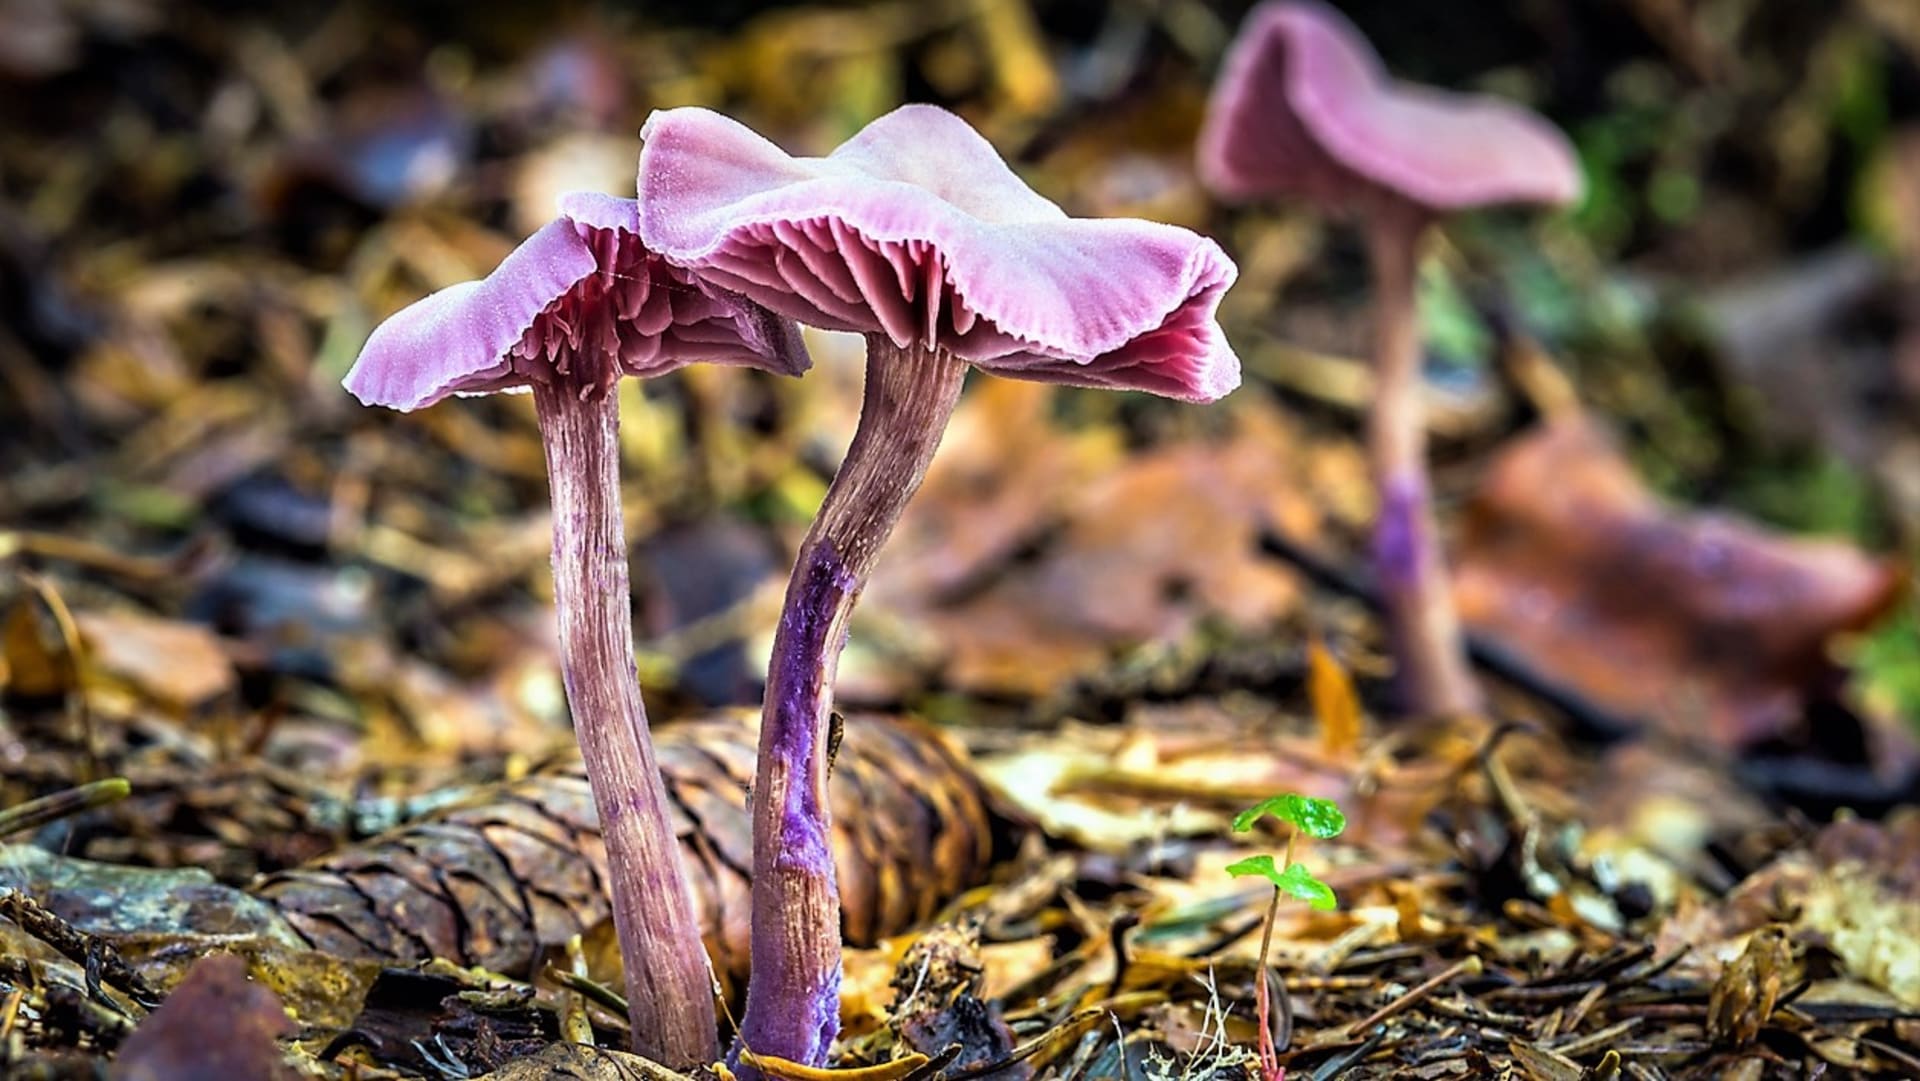 Lakovka ametystová je drobná houbička v mládí s vyklenutým, ve stáří plochým až vmáčklým, často zvlněným, 2 až 5 centimetrů širokým kloboukem.